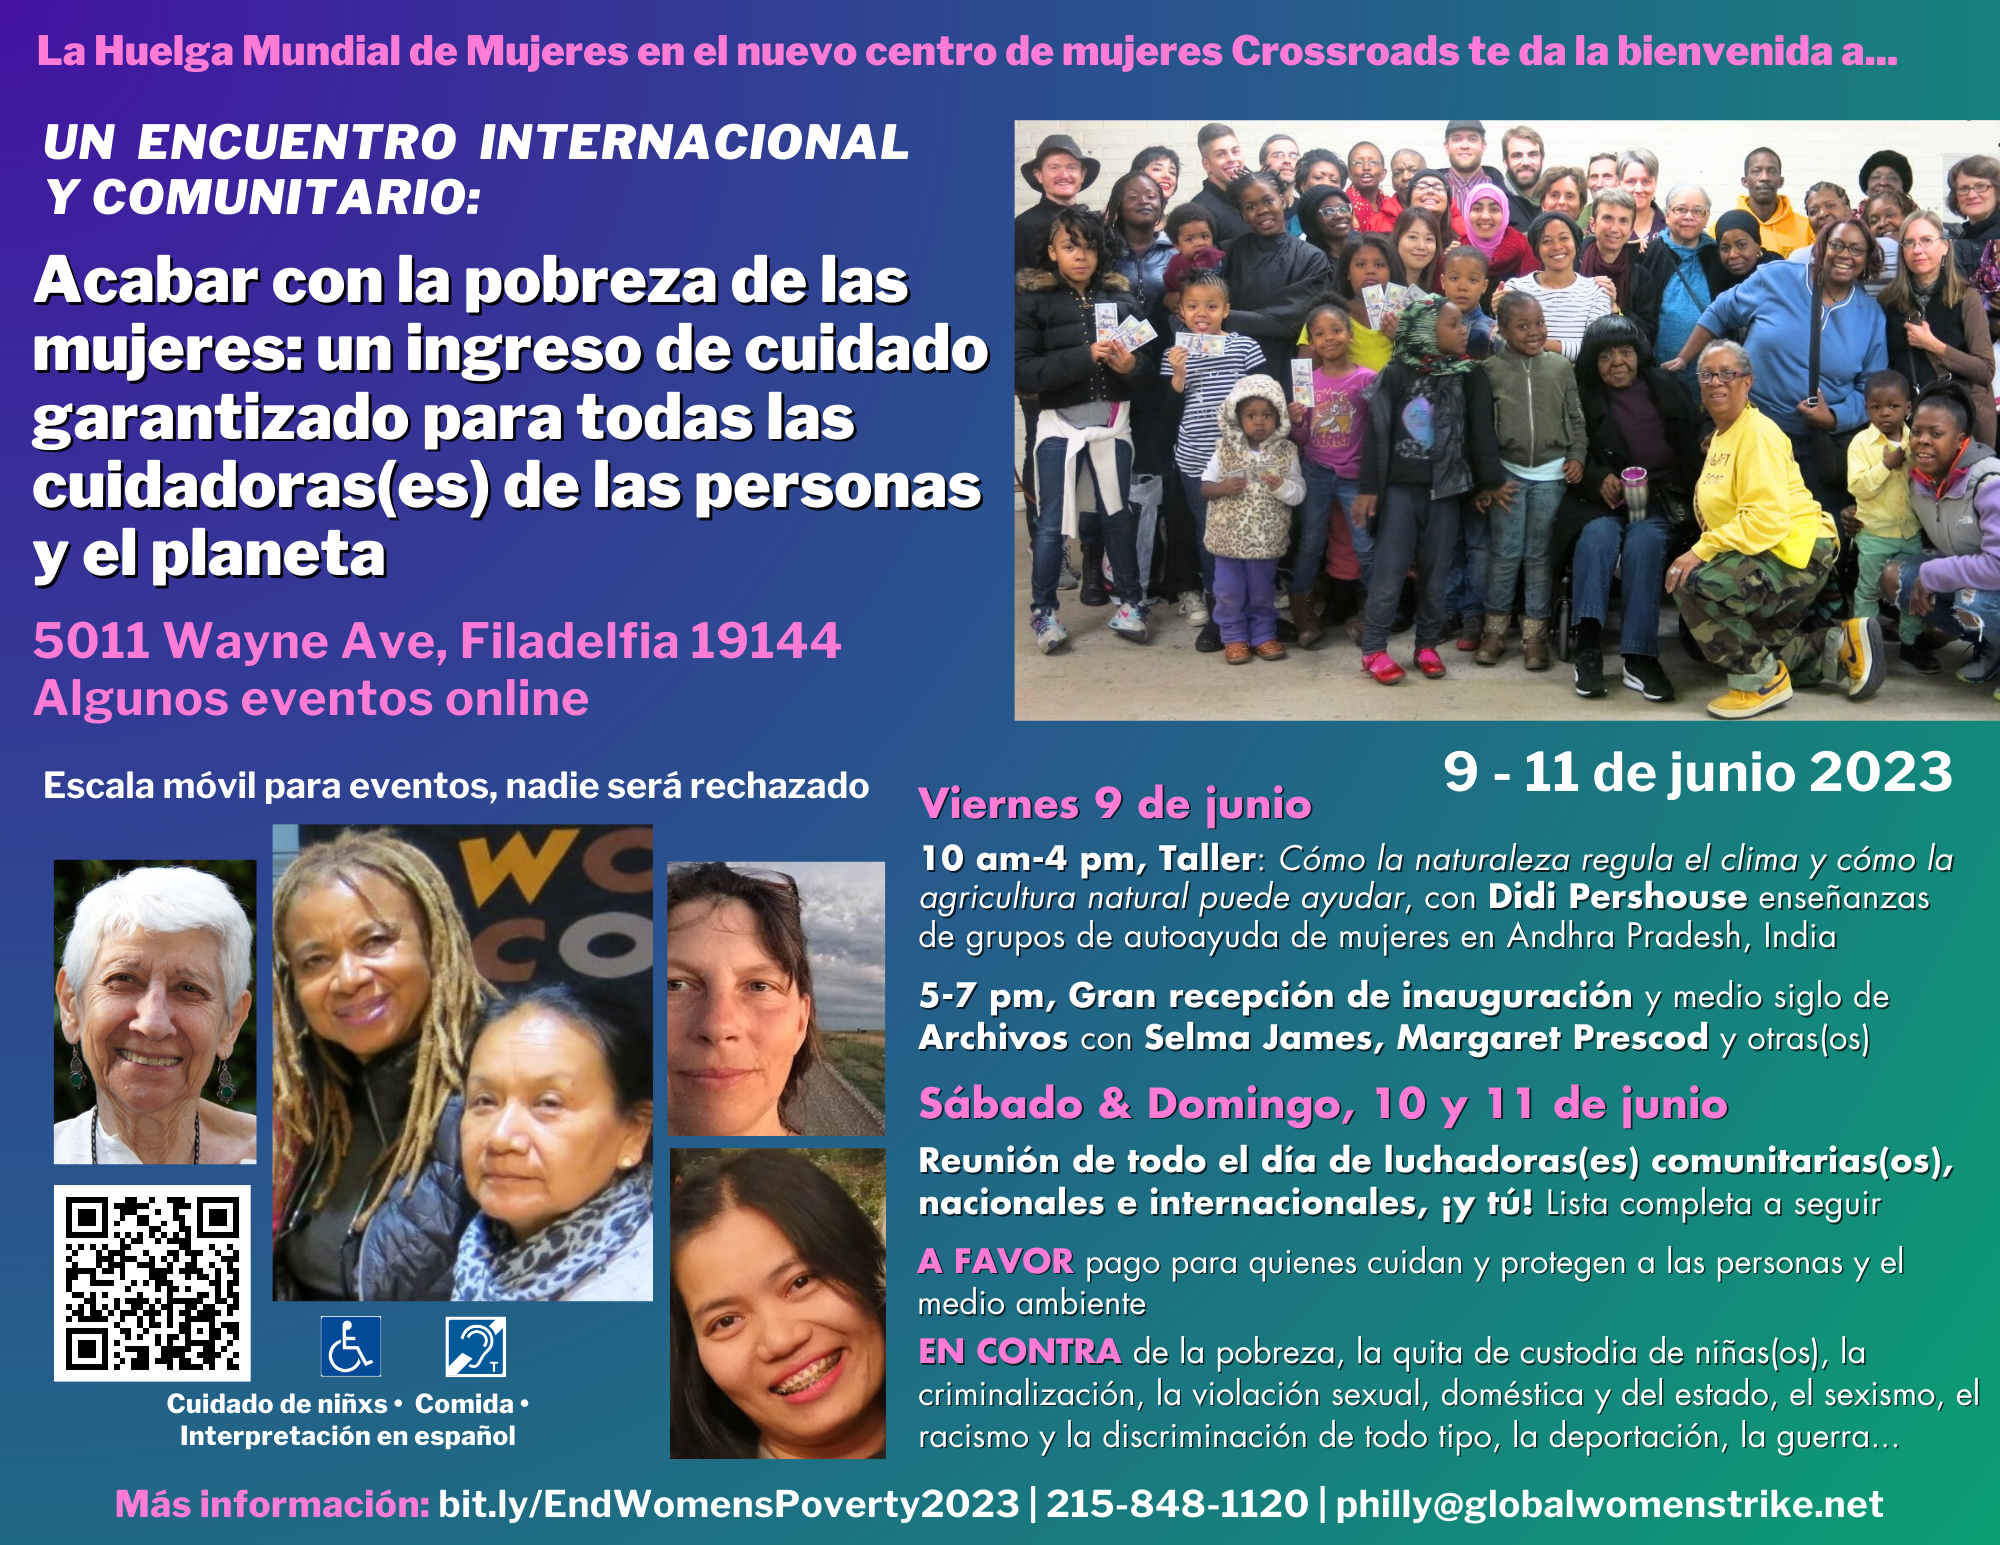 Un encuentro internacional y comunitario, 9 - 11 de junio 2023